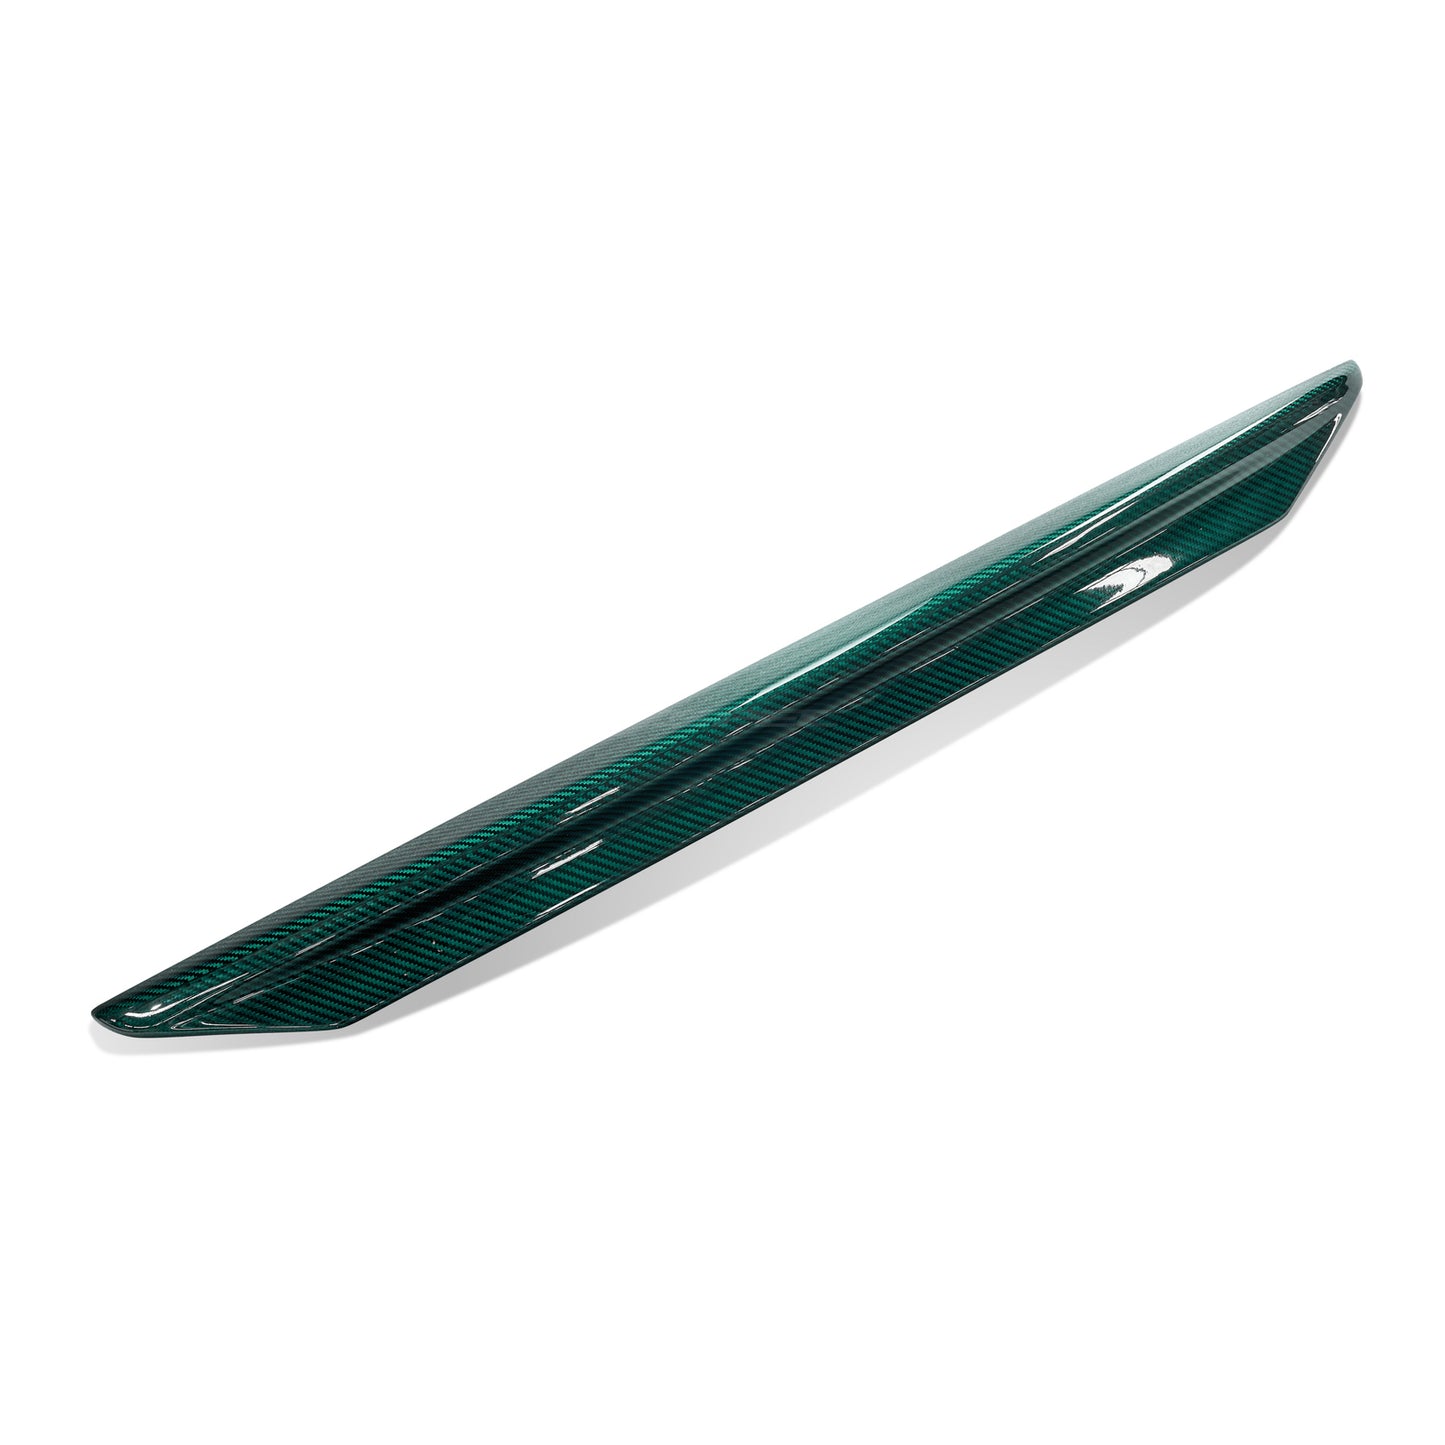 MINE'S Carbon Boot Lip Spoiler for Skyline R34 BNR34 GT-R (Emerald)